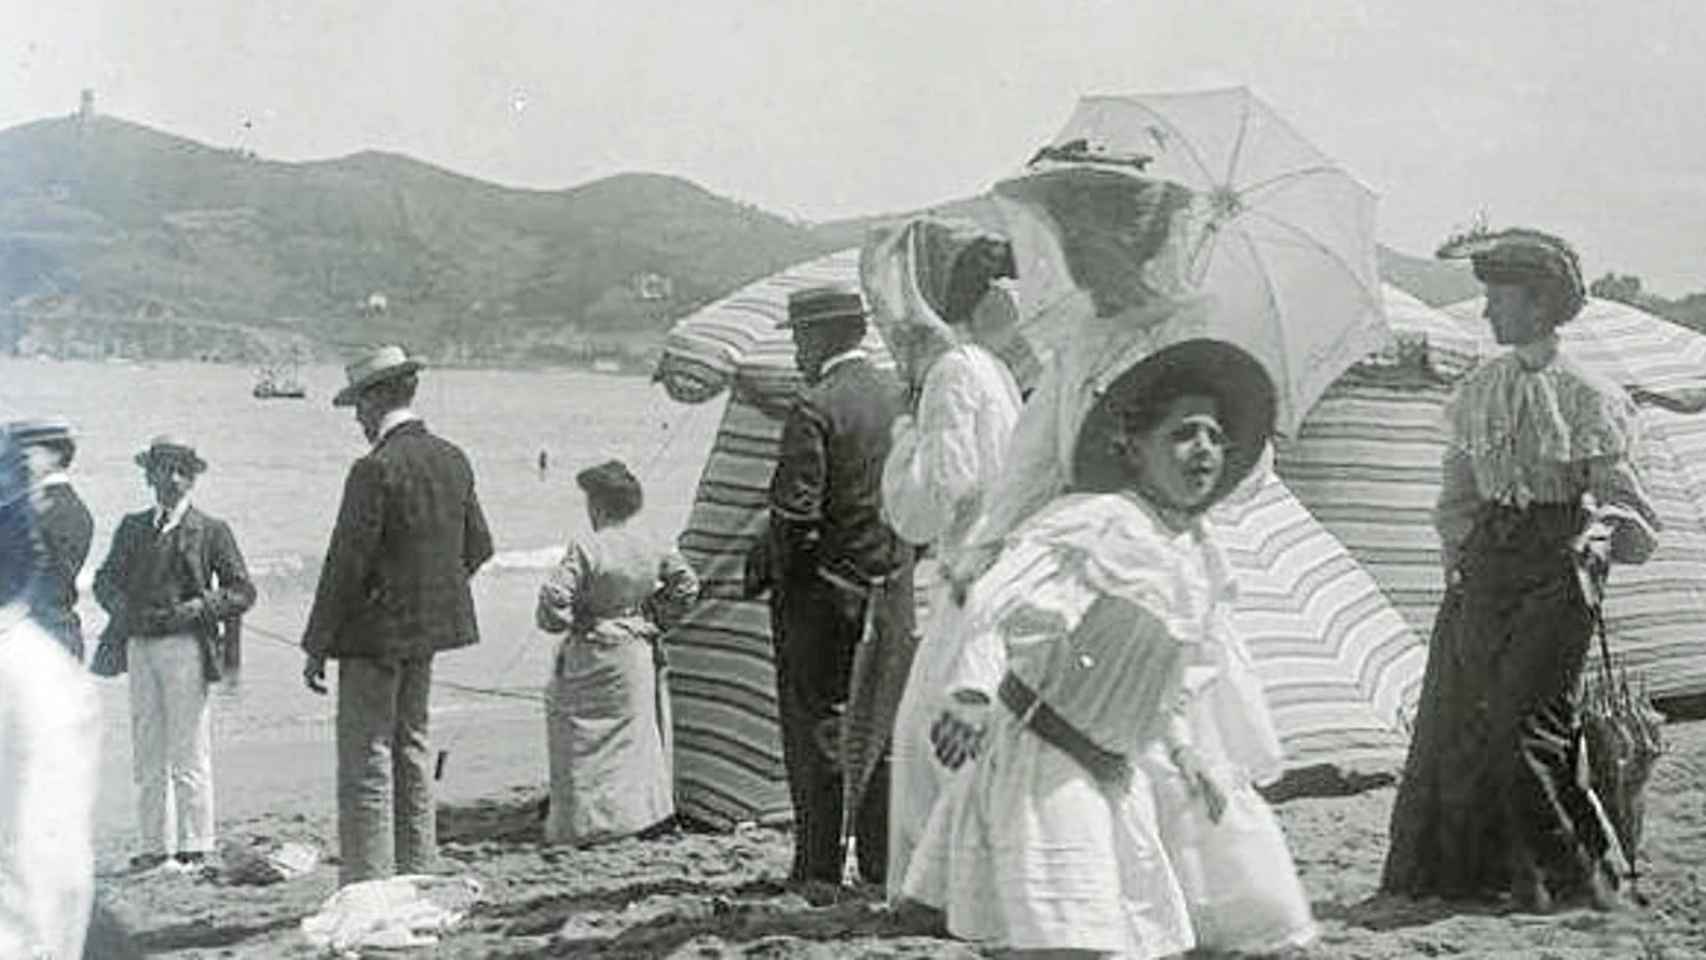 Bañistas en la playa de La Concha (San Sebastián) a principios del siglo XX.